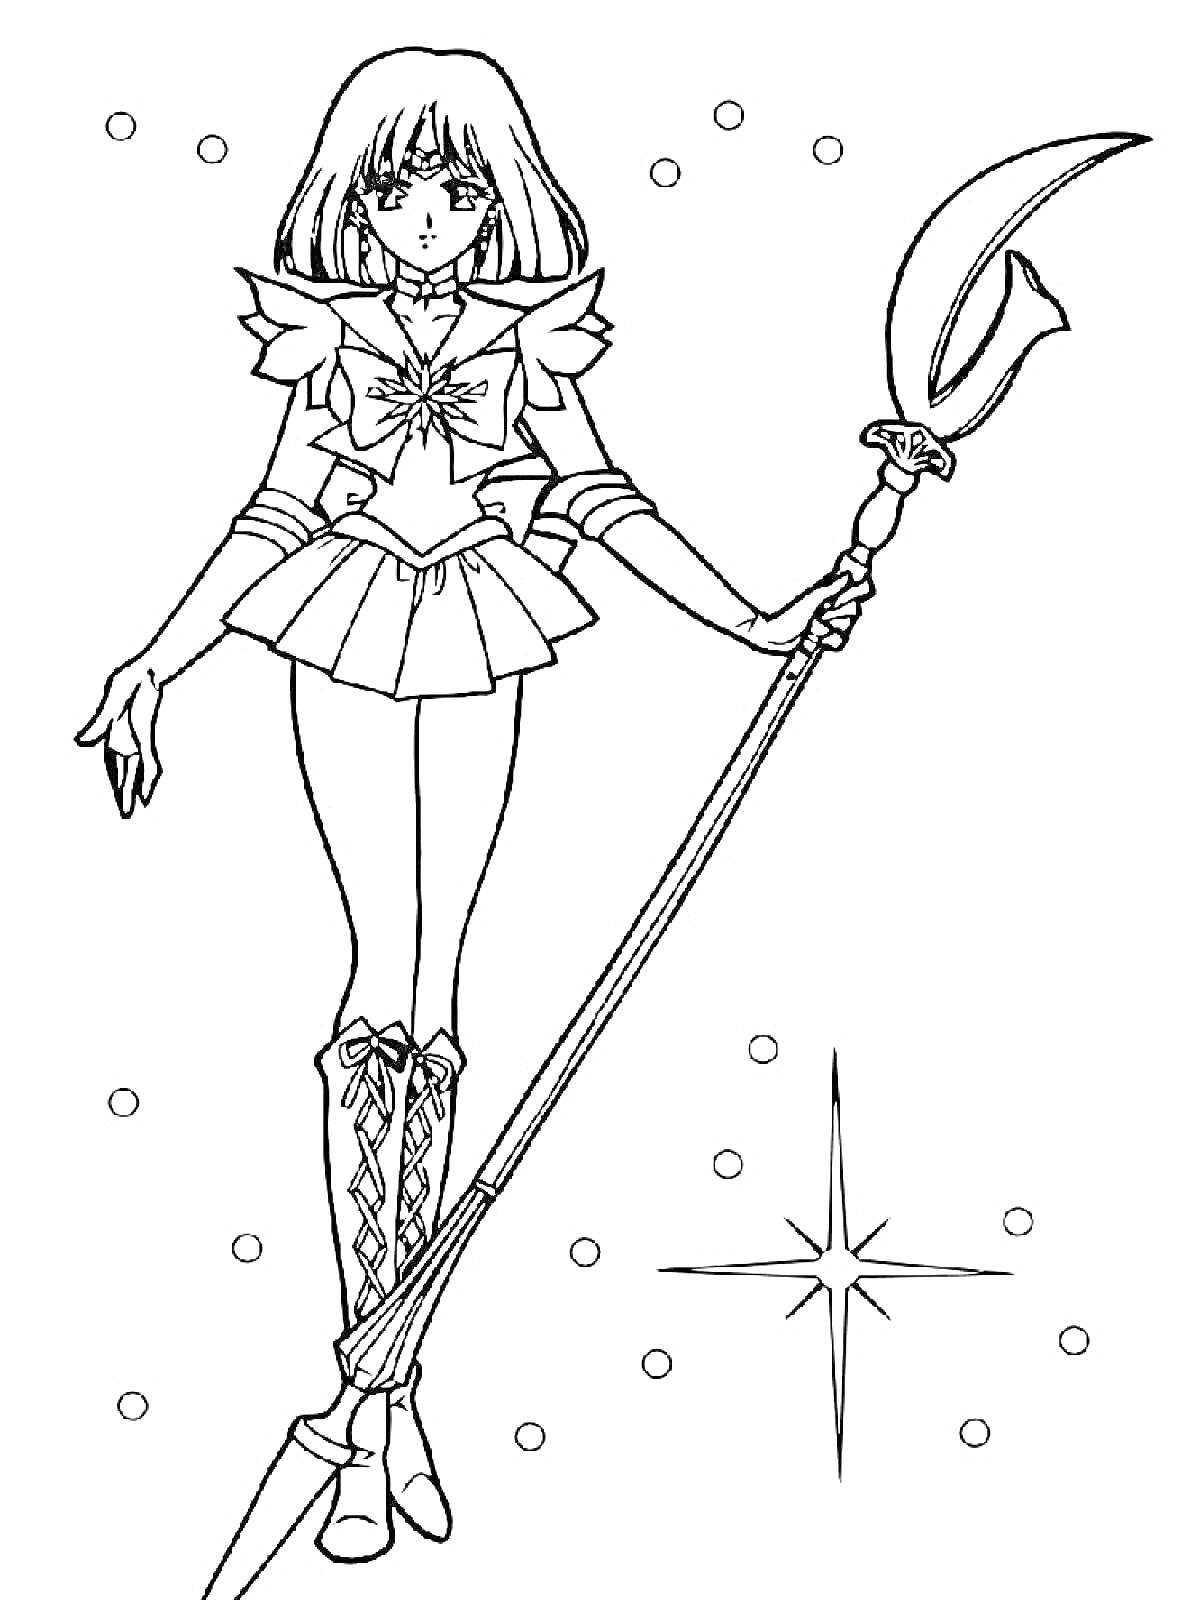 Раскраска Сейлормун, стоящая с жезлом в руке, с короткой стрижкой, в костюме воина, с фоновыми звездами и точками